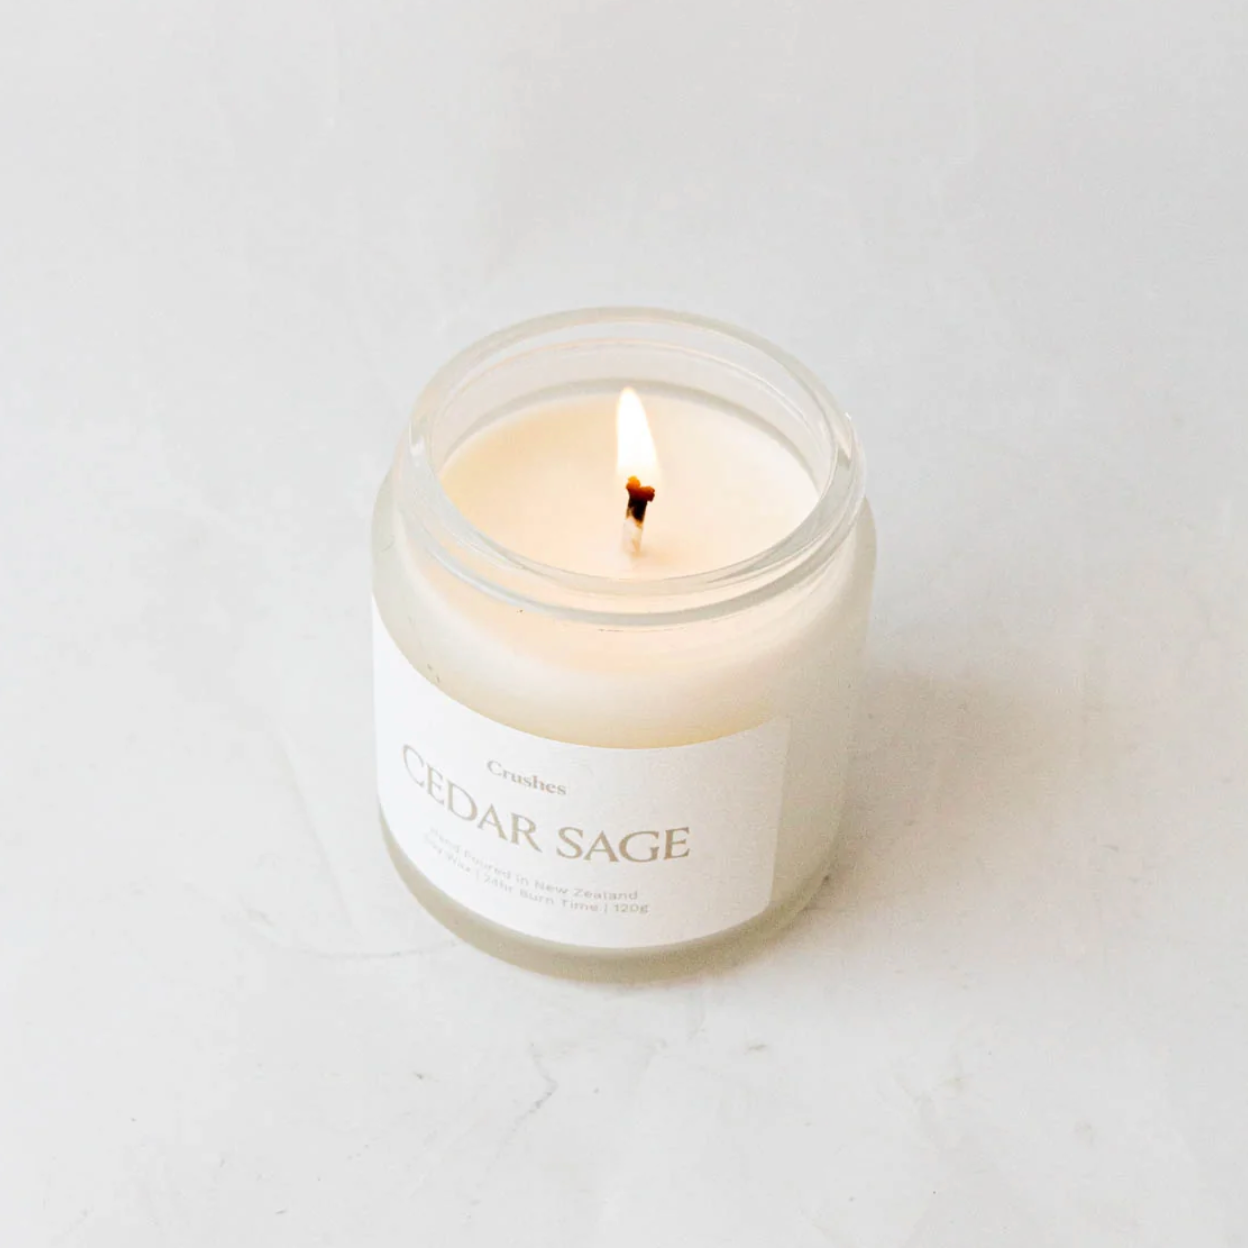 Cedar Sage Candle